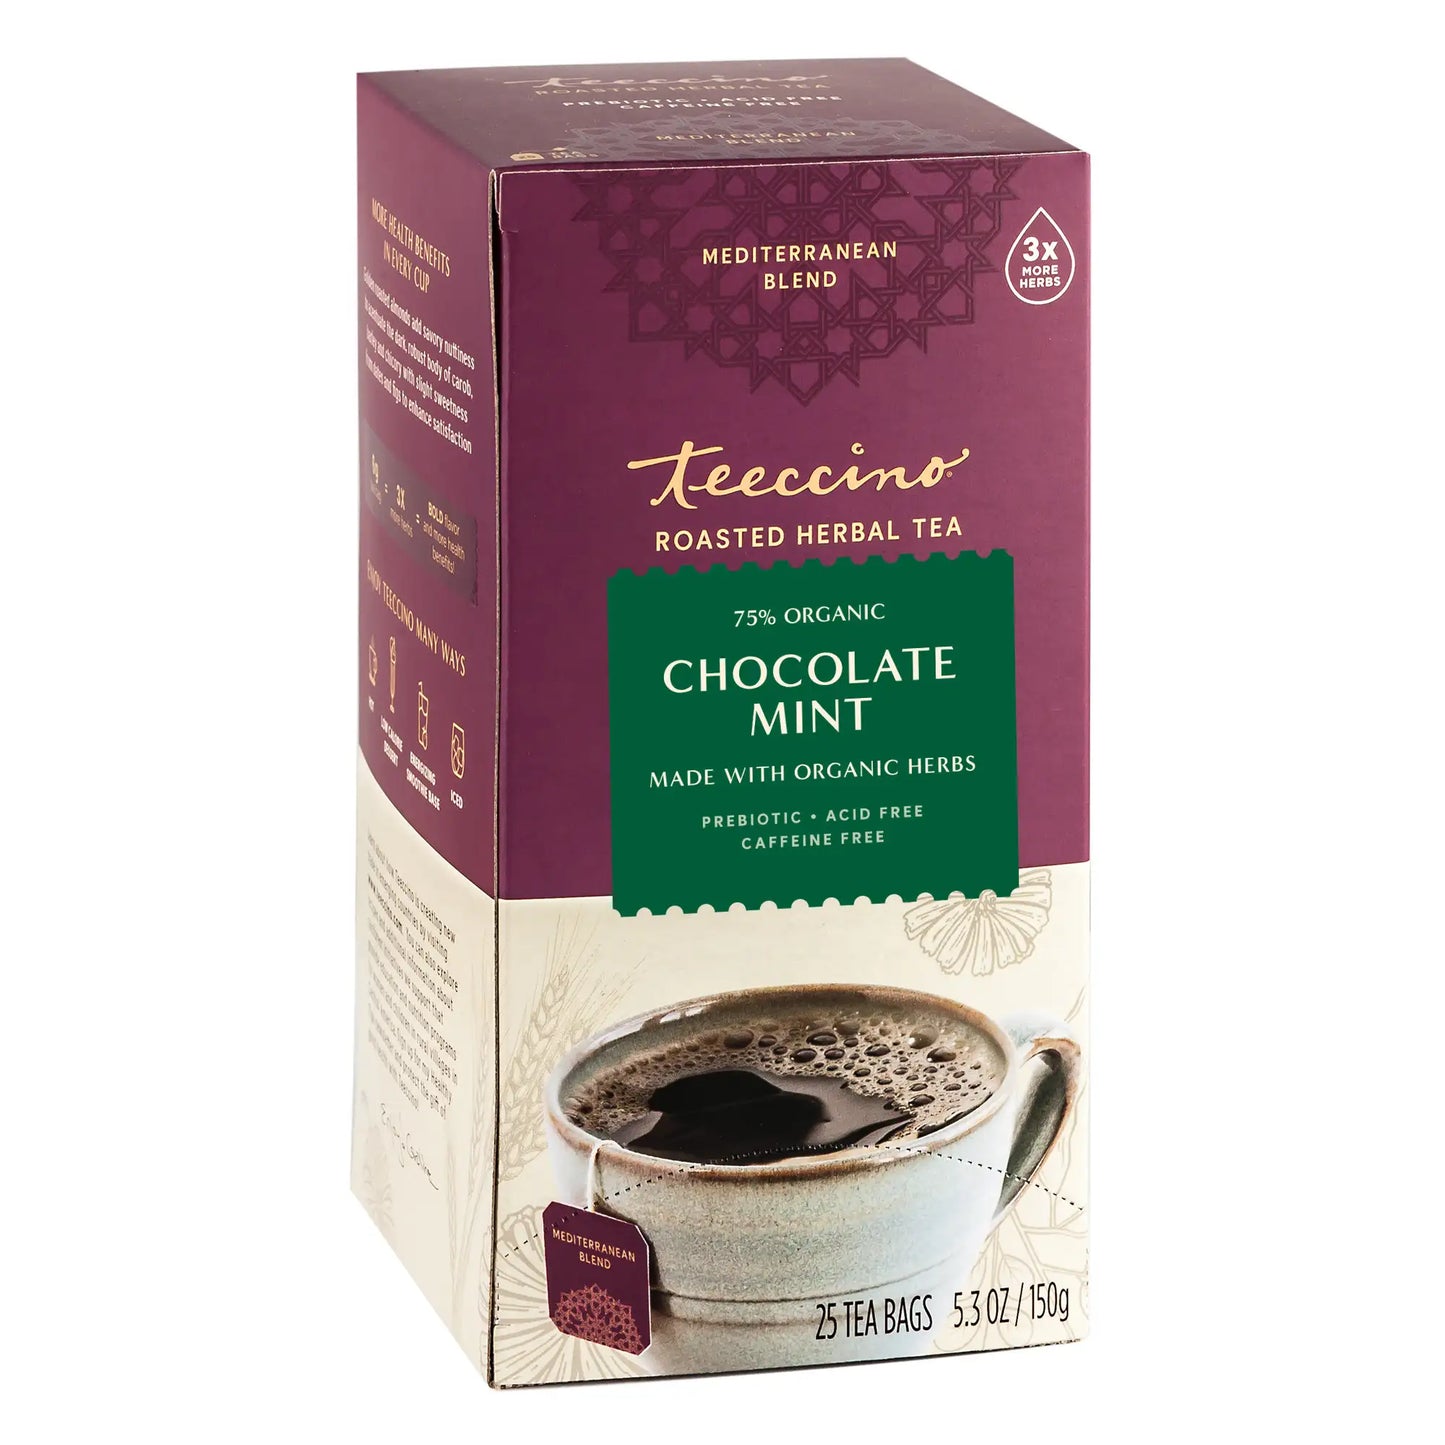 Chocolate Mint Roasted Herbal Tea